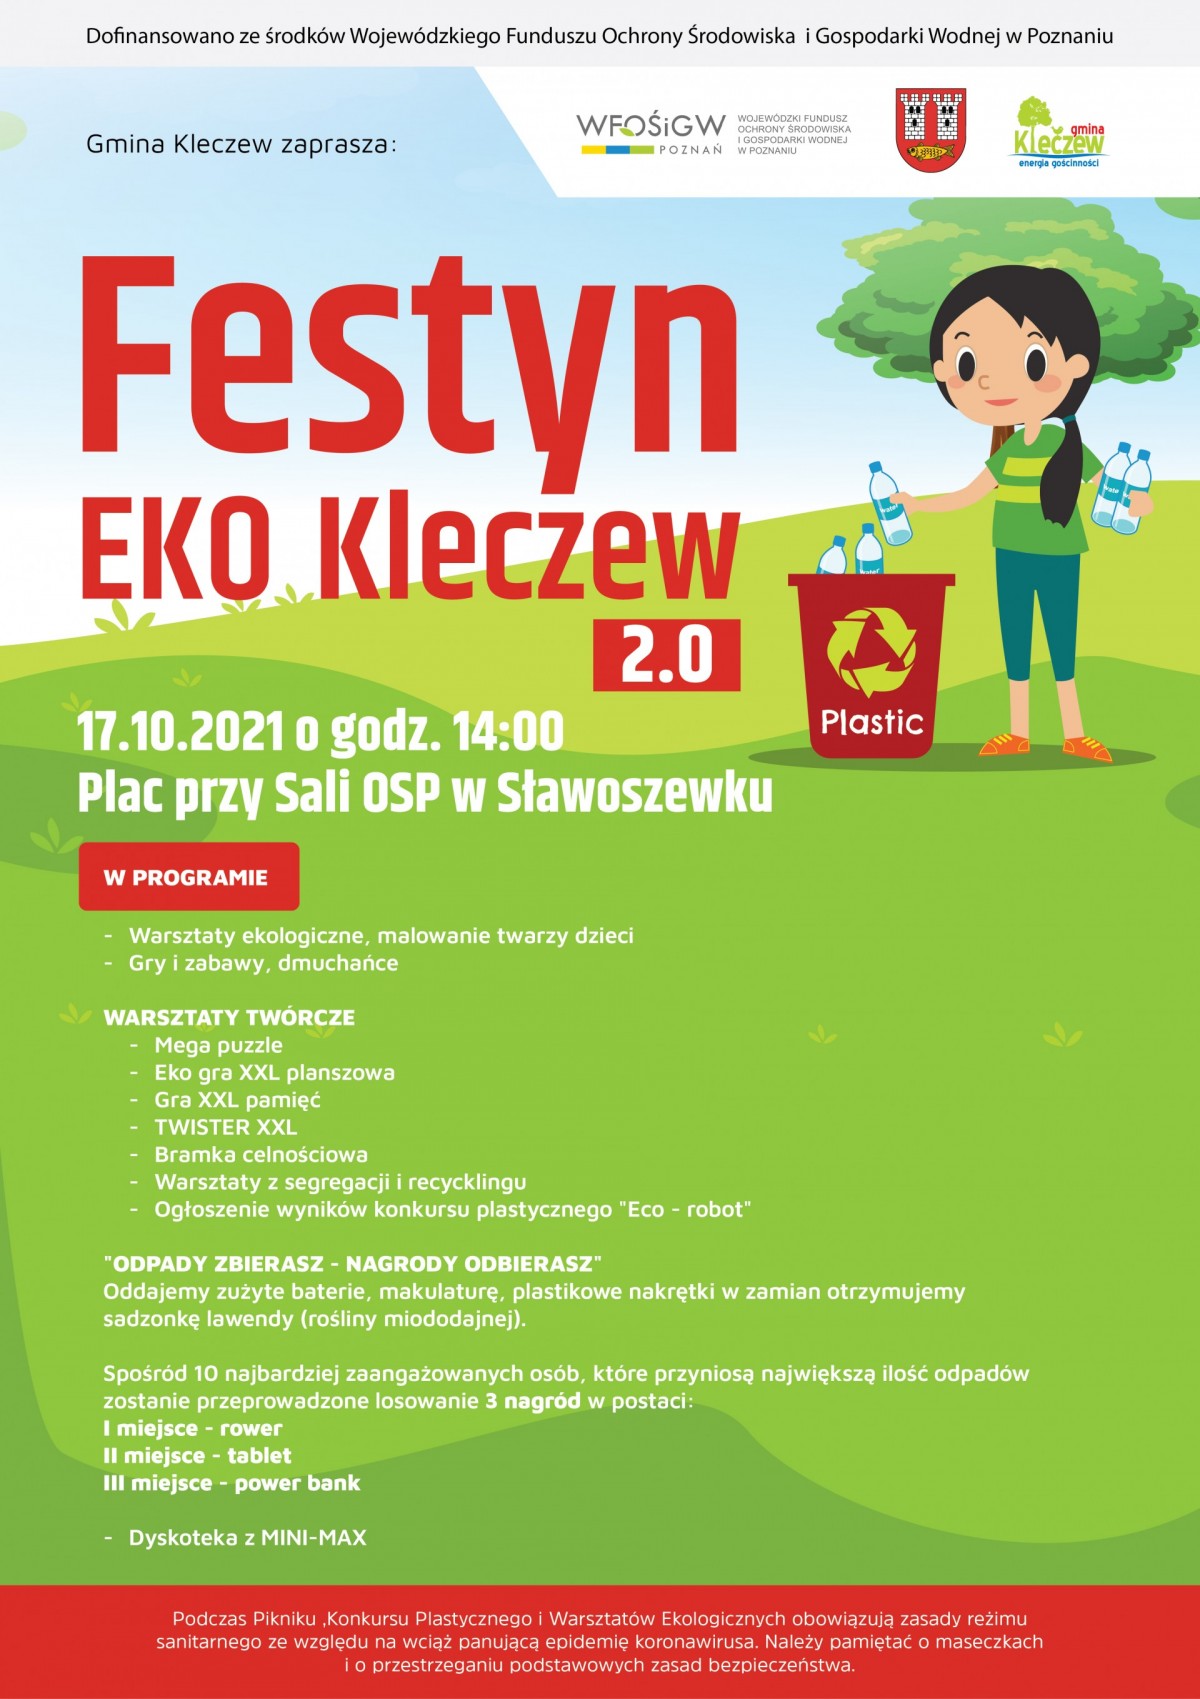 Festyn "EKO Kleczew 2.0"